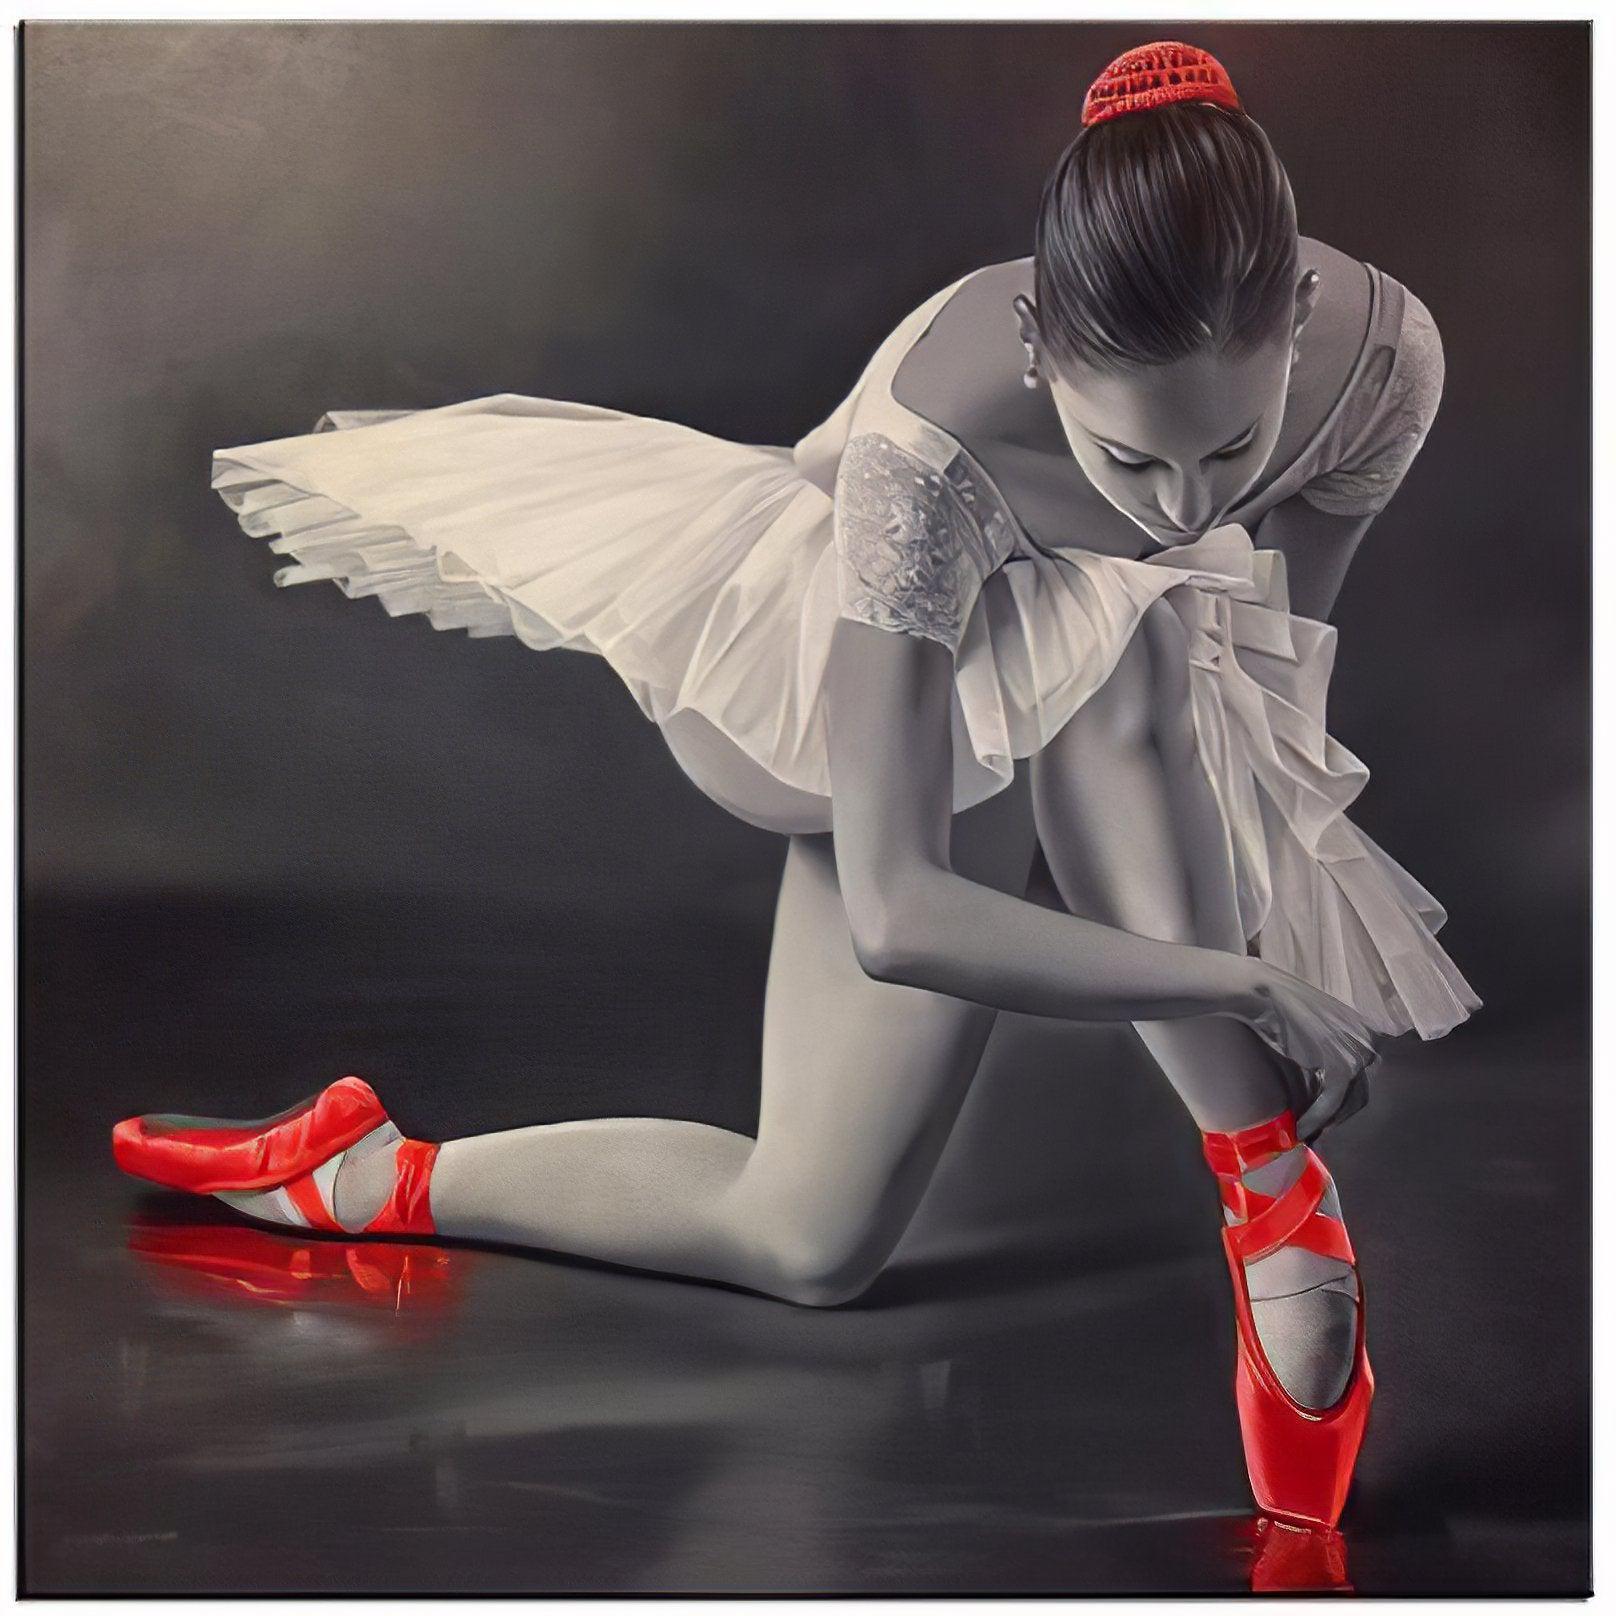 Ballet Girl: Grace and poise in elegant dance Ballet Girl - Diamondartlove